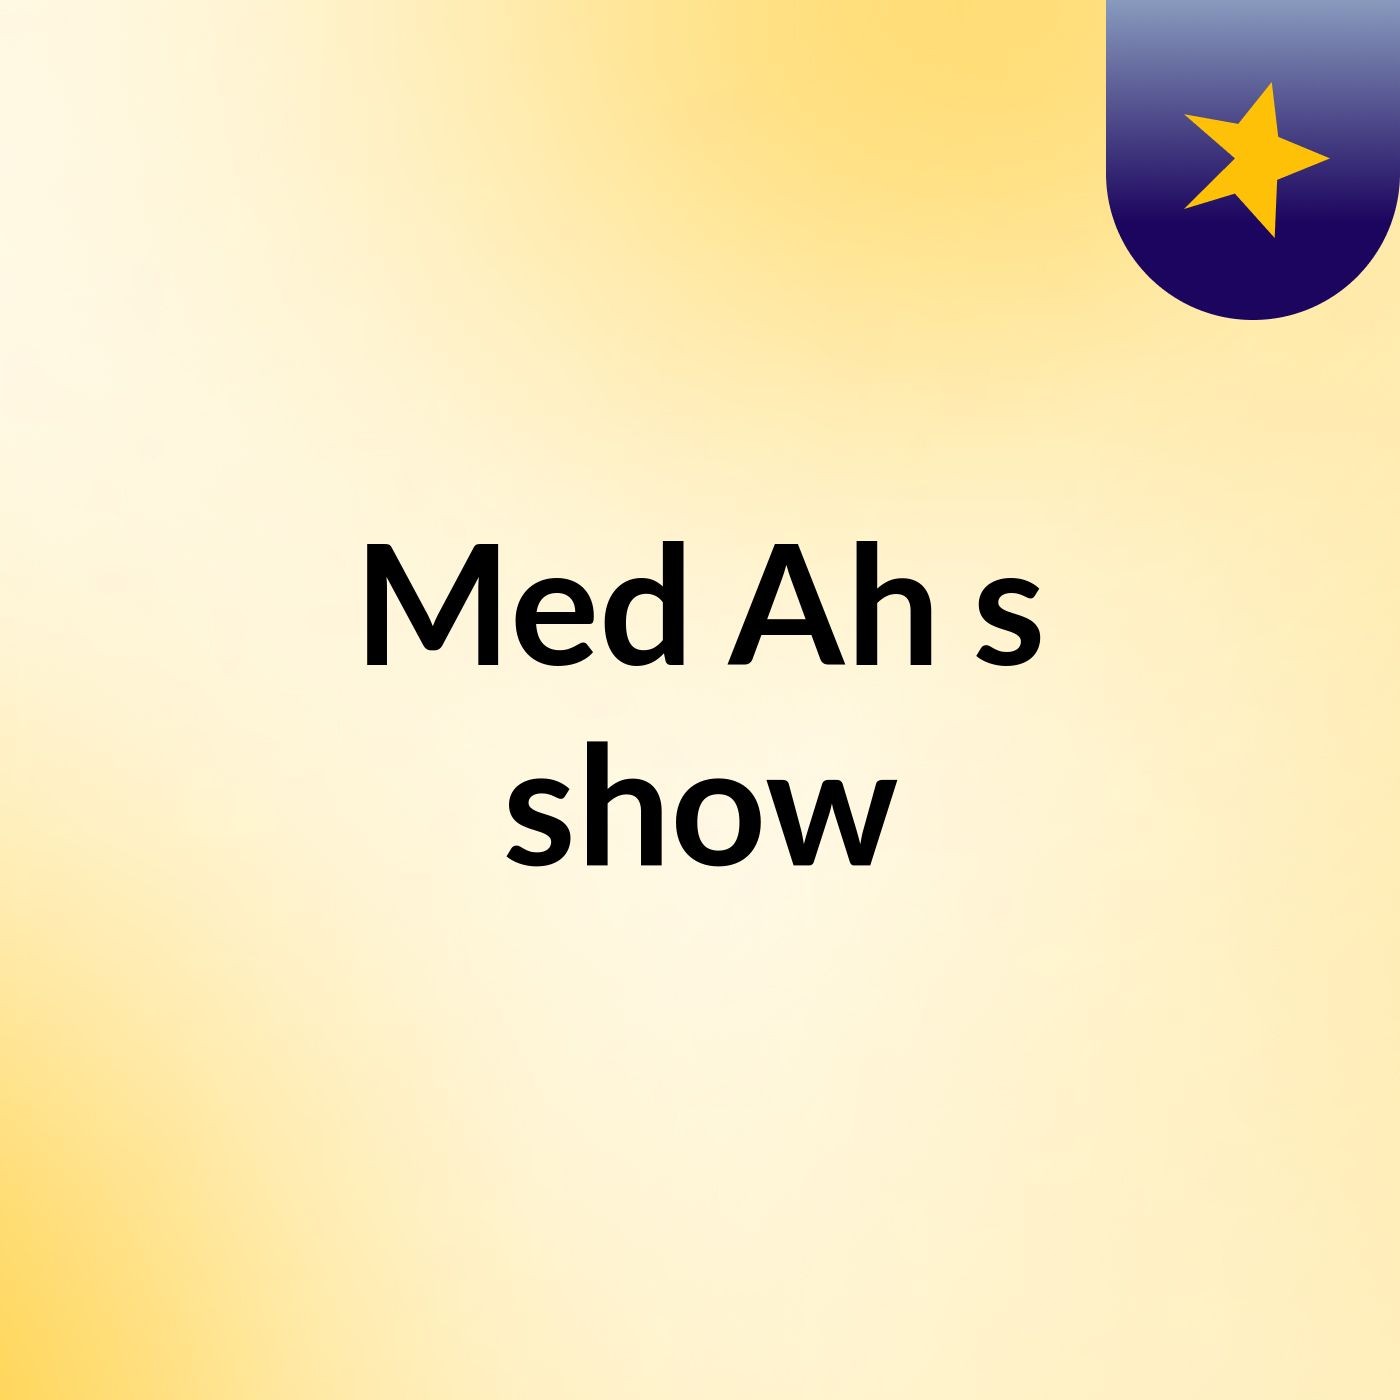 Med Ah's show